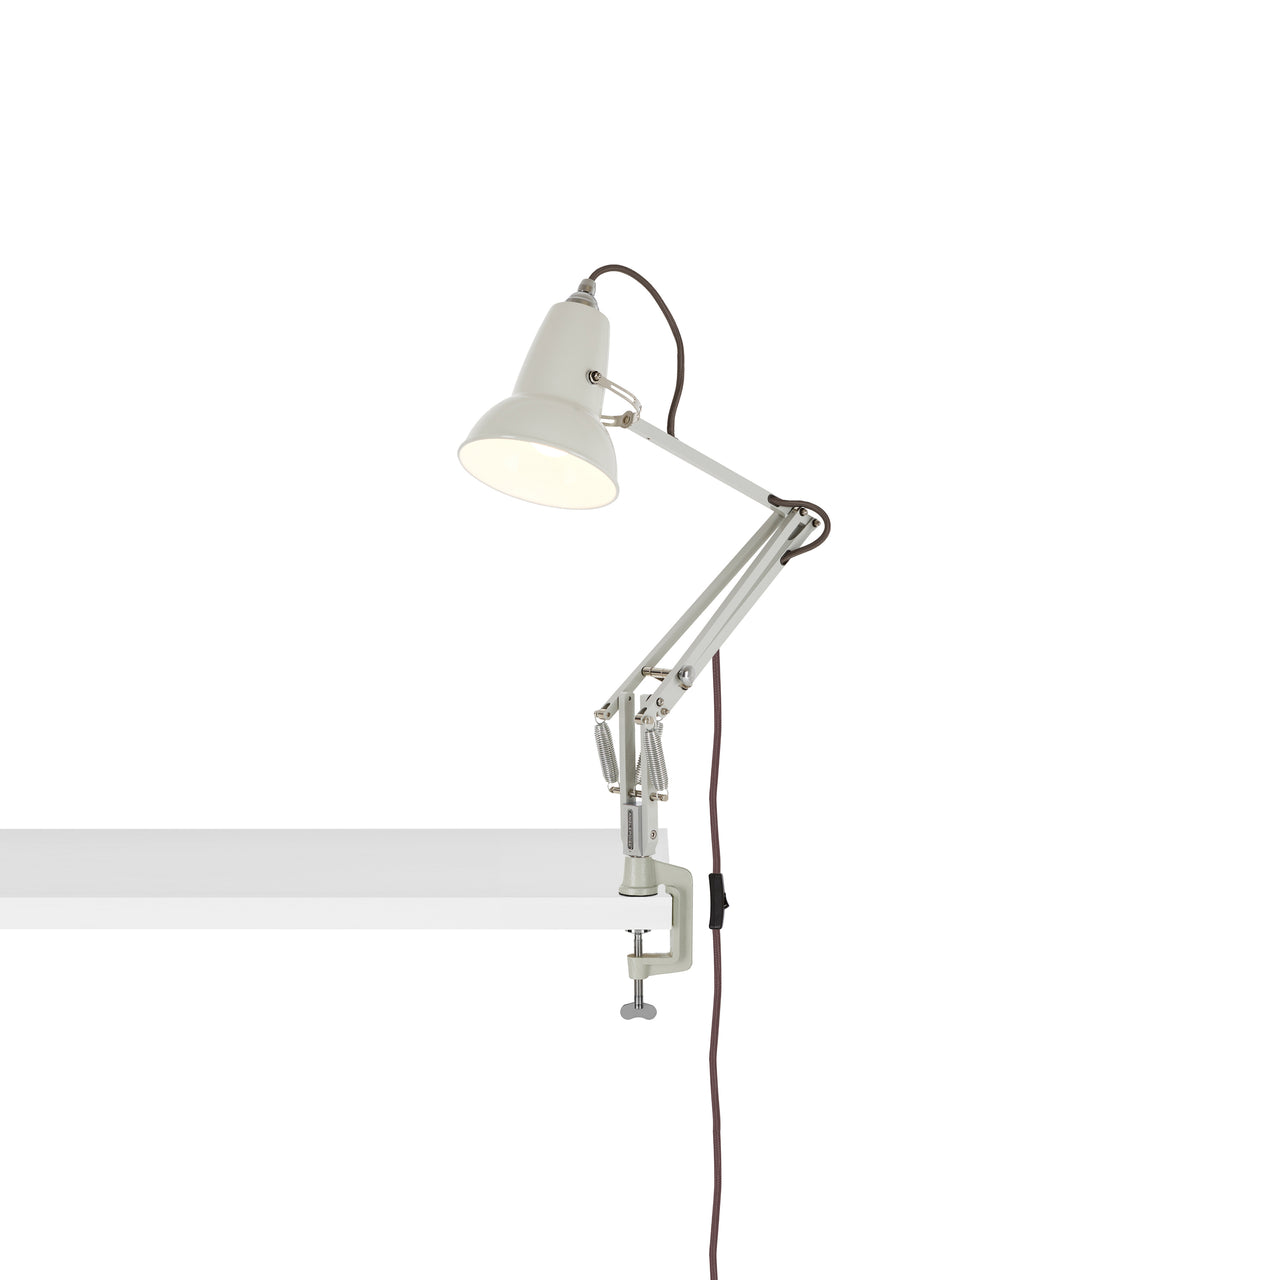 Original 1227 Mini Desk Lamp with Clamp: Linen White